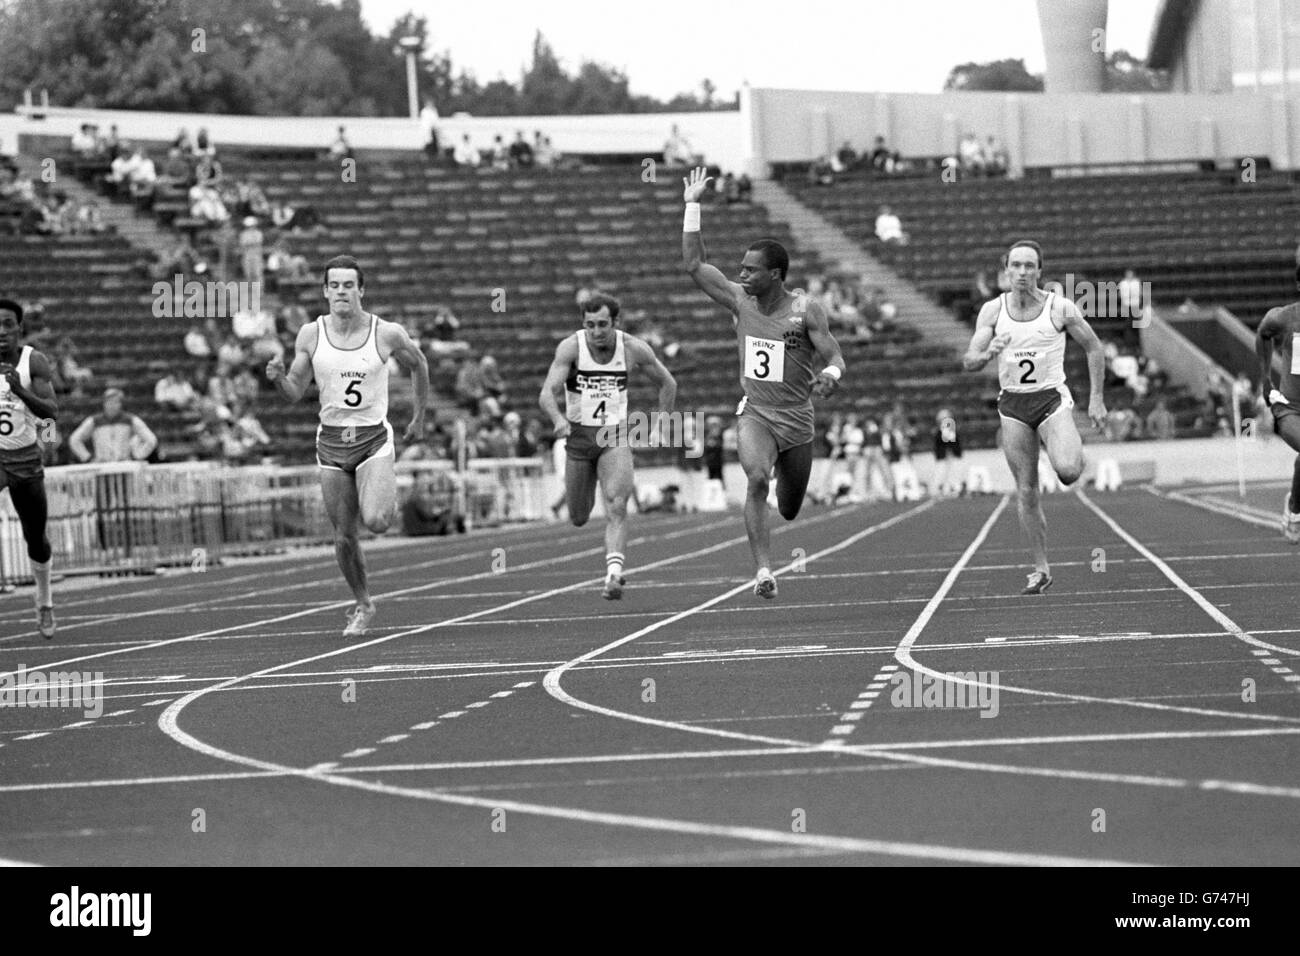 Der Amerikaner Mel Lattany gewinnt die 100 m bei den British Games, gefolgt von Cameron Sharp (5) und Mike MacFarlane (8). Stockfoto